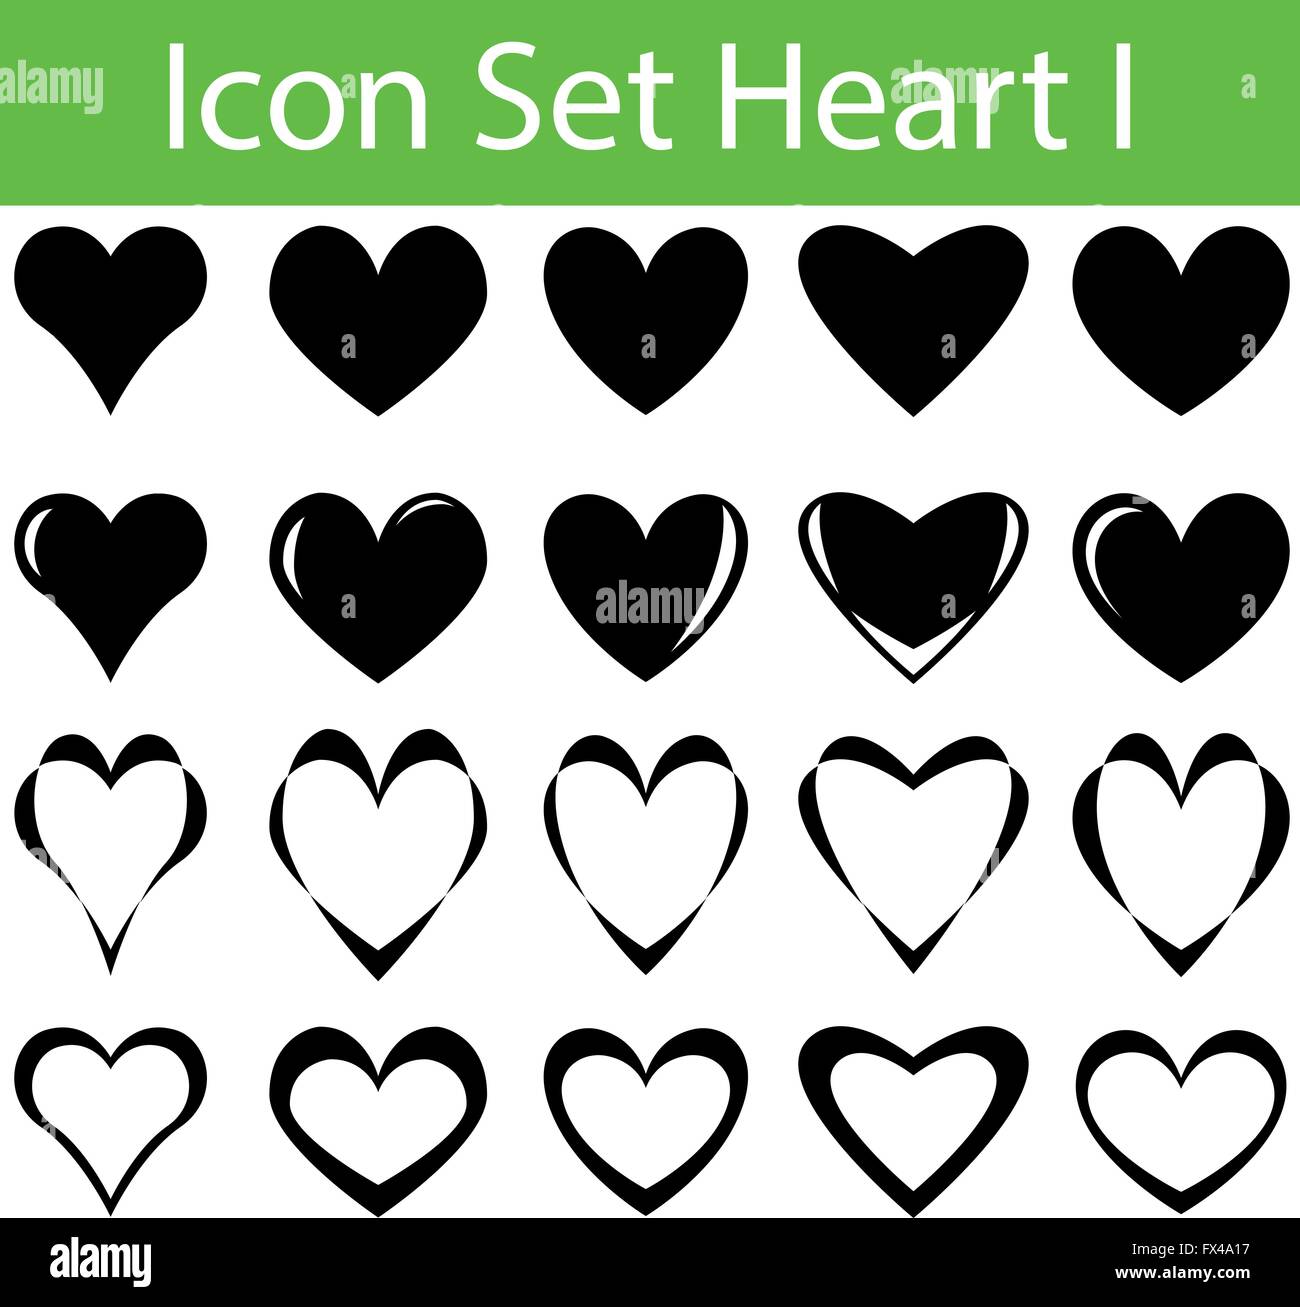 Icon-Set Herz ich mit 20 Symbole für verschiedene Kauf Stock Vektor